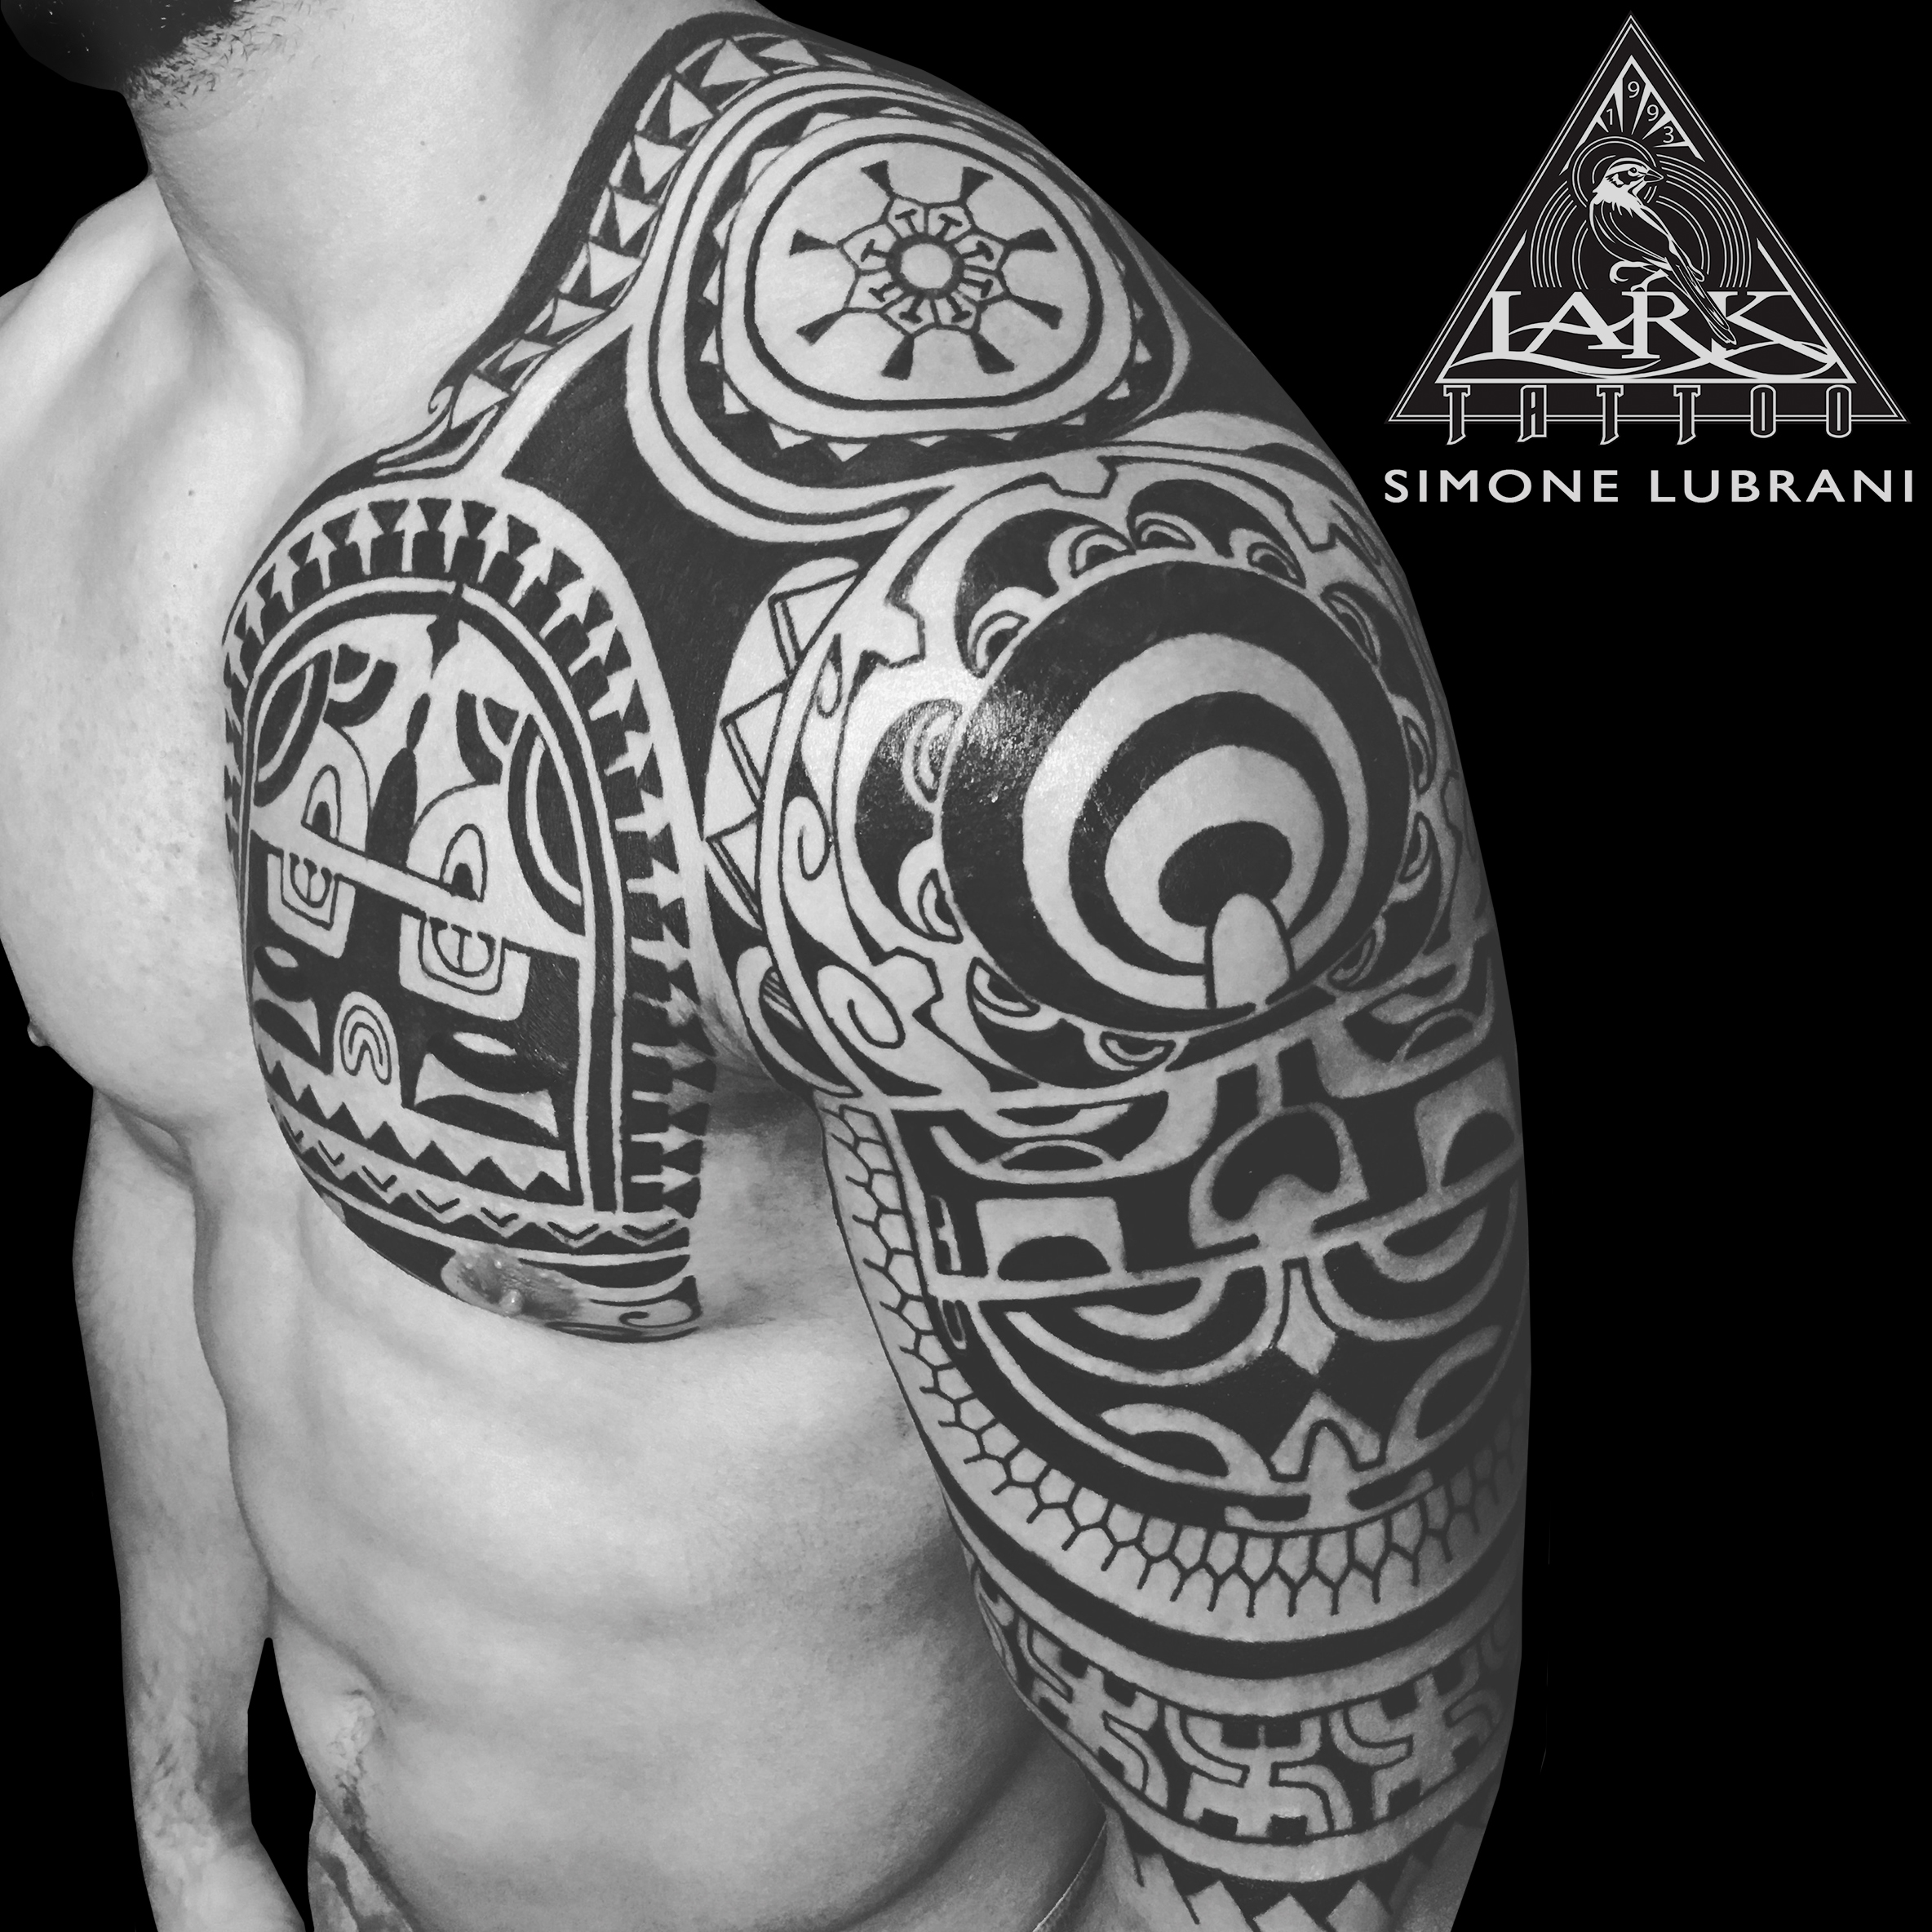 #LarkTattoo #Tattoo #SimoneLubrani #SimoneLubraniLarkTattoo #Tattoos #Tribal #TribalTattoo #Polynesian #PolynesianTattoo #Maori #MaoriTattoo #Samoan #SamoanTattoo #ChestTattoo #Arm #TattooArtist #Tattoist #Tattooer #LongIslandTattooArtist #LongIslandTattooer #LongIslandTattoo #TattooOfTheDay #Tat #Tats #Tatts #Tatted #Inked #Ink #TattooInk #AmazingInk #AmazingTattoo #BodyArt #LarkTattooWestbury #Westbury #LongIsland #NY #NewYork #USA #Art #Tattedup #InkedUp #LarkTattoos